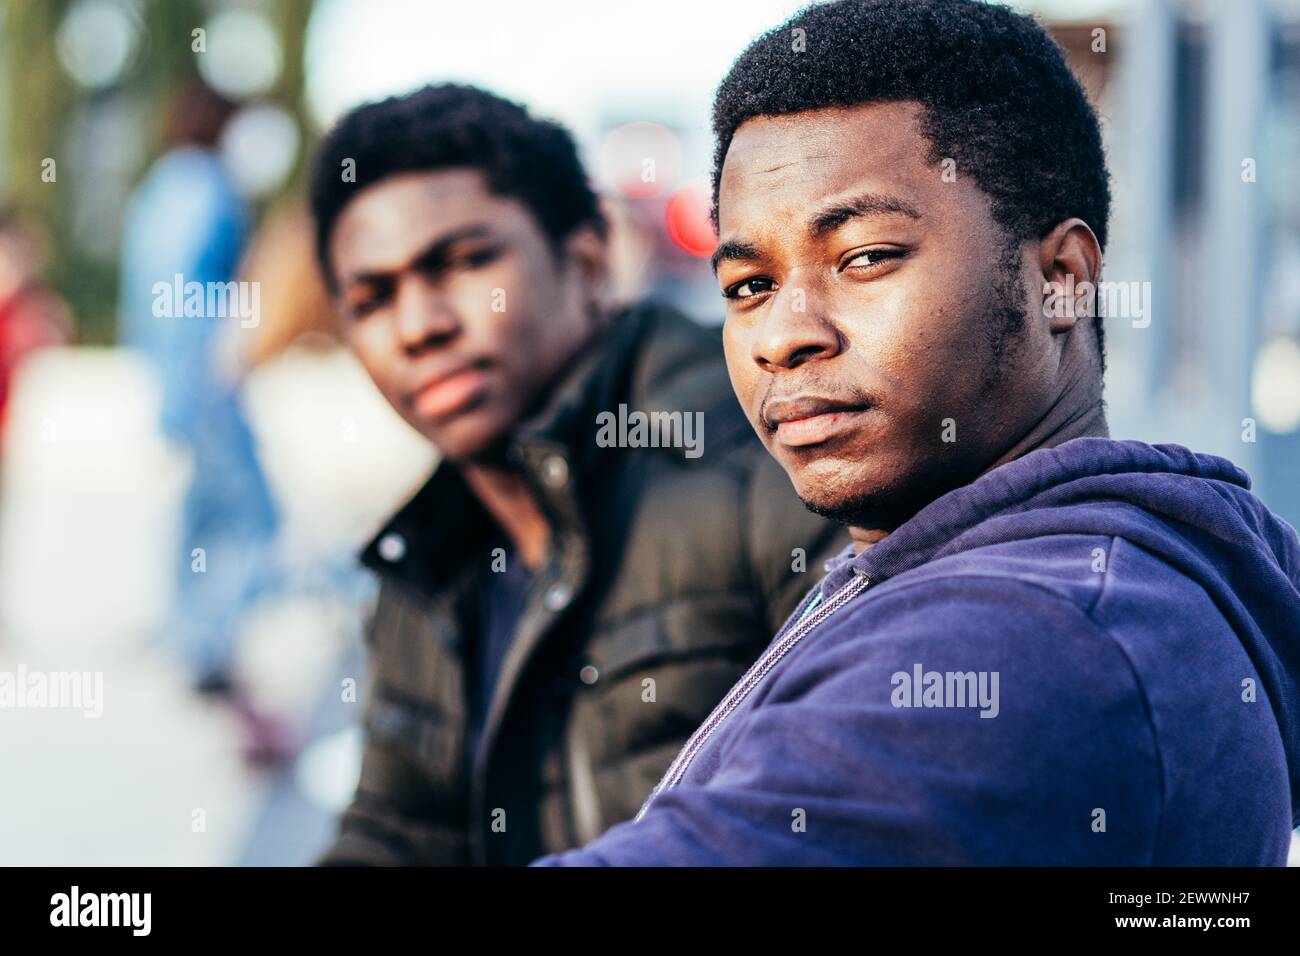 Ritratto di due amici afro-americani seduti in uno spazio urbano. Foto Stock